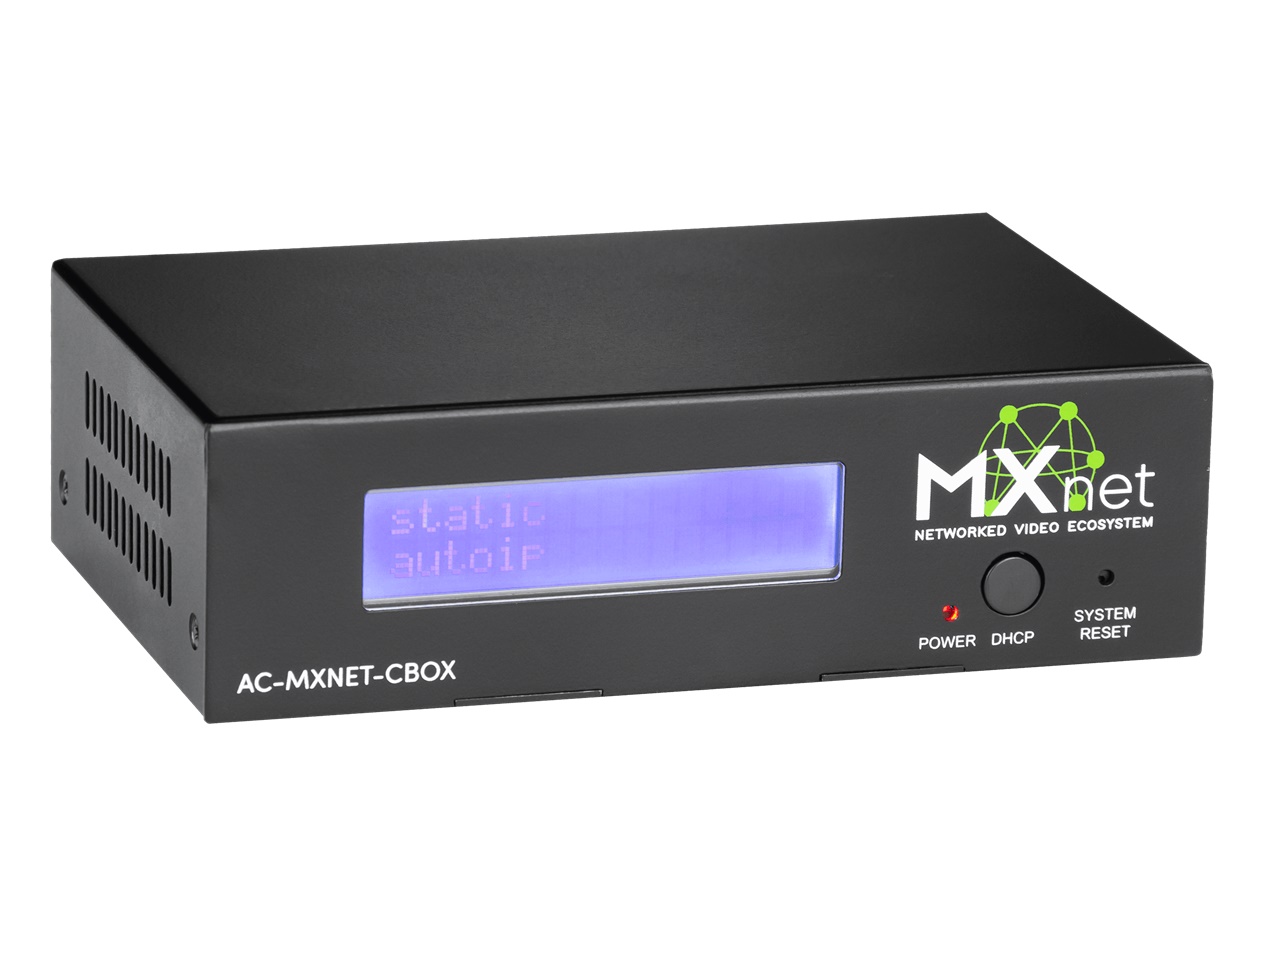 AC-MXNET-CBOX MXNet Control Box by AVPro Edge